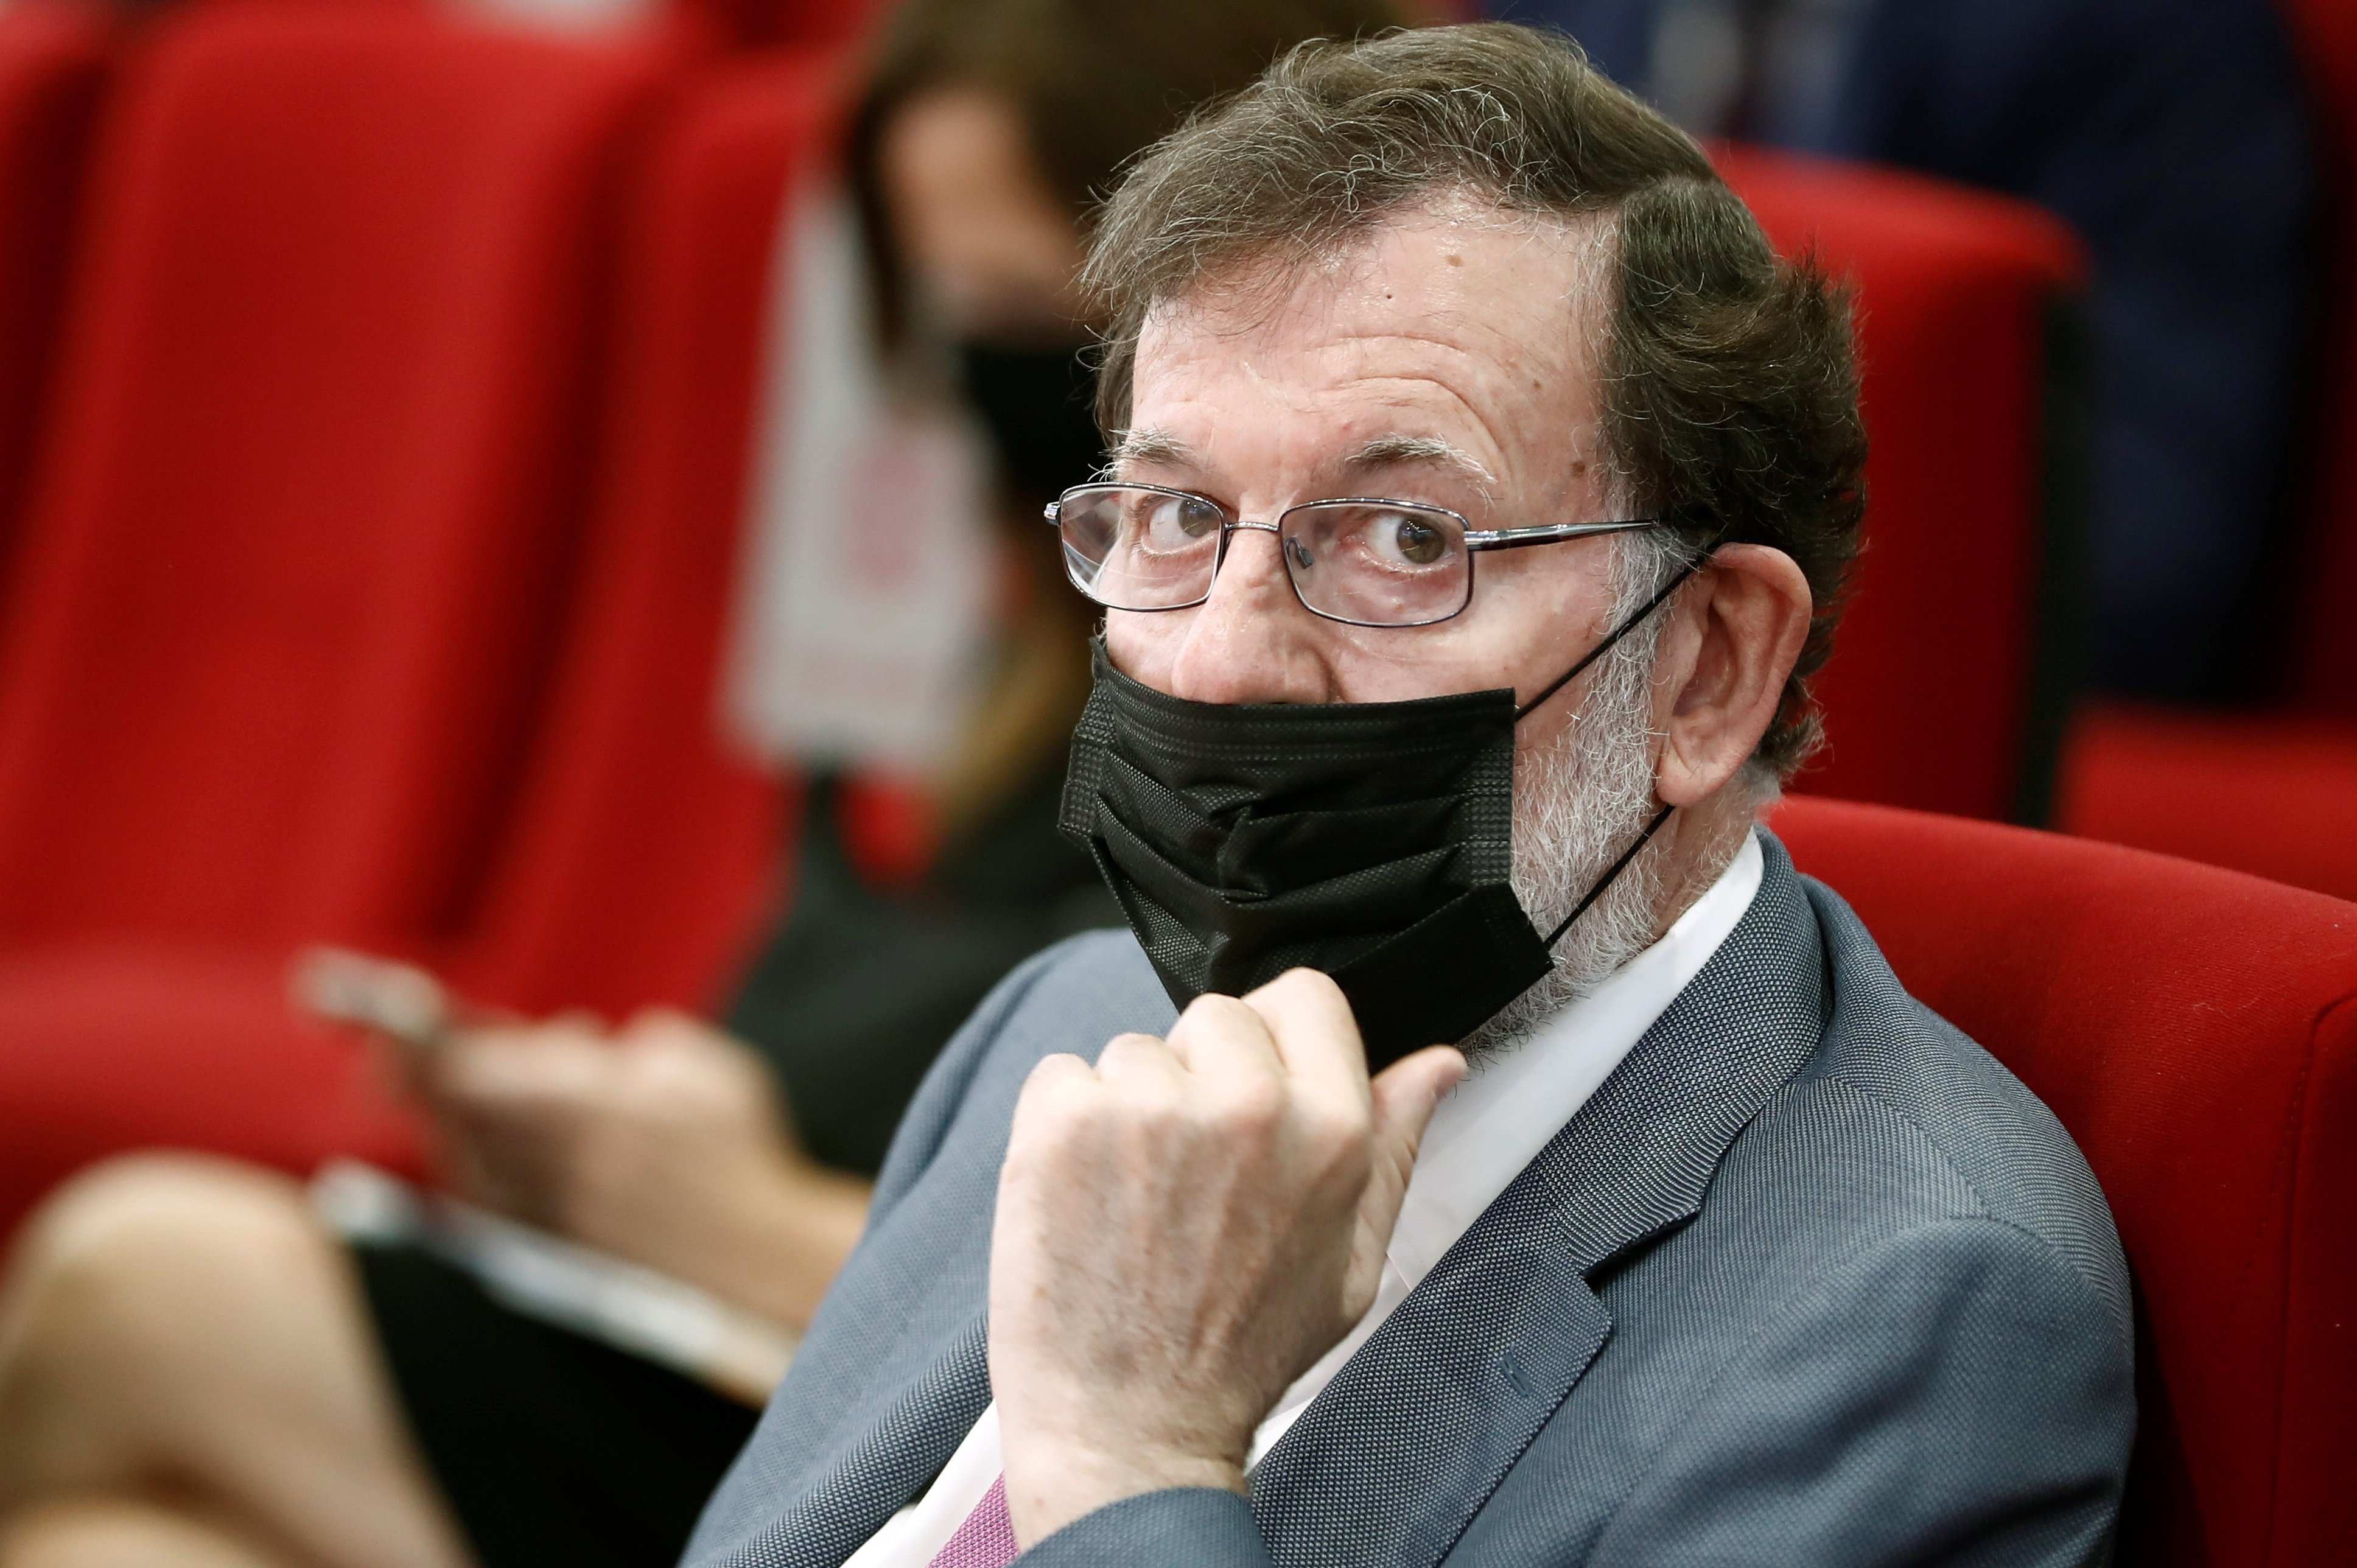 El rótulo viral i 'fake' de TVE sobre Rajoy que arrasa en redes: "brillante"